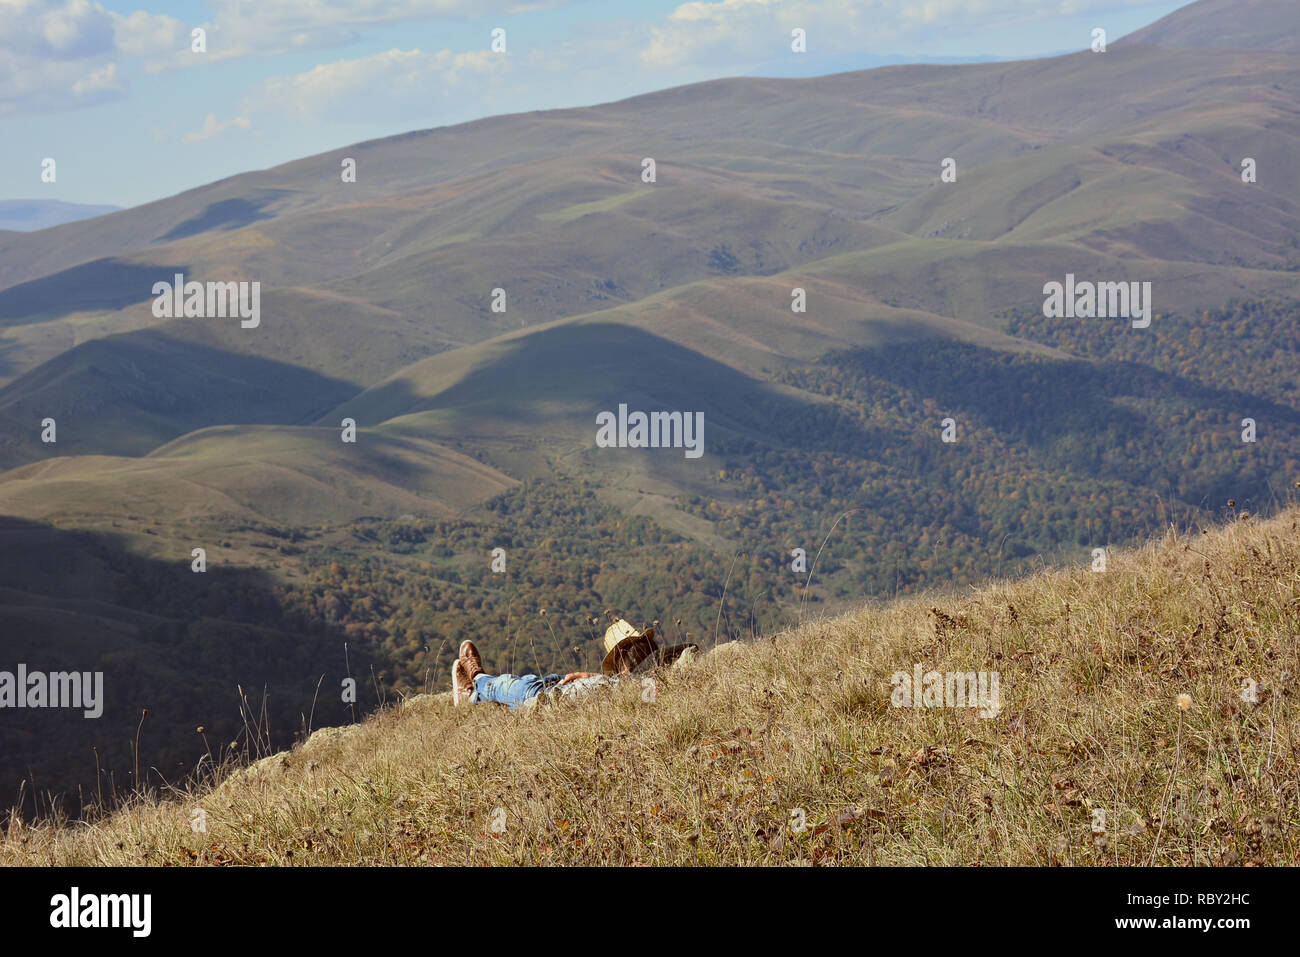 Jeune homme dans des vêtements de cow-boy reste sur les montagnes.Traveler bénéficiant d'une vue panoramique au cours de la randonnée, avec en arrière-plan magnifique paysage de montagne. Banque D'Images